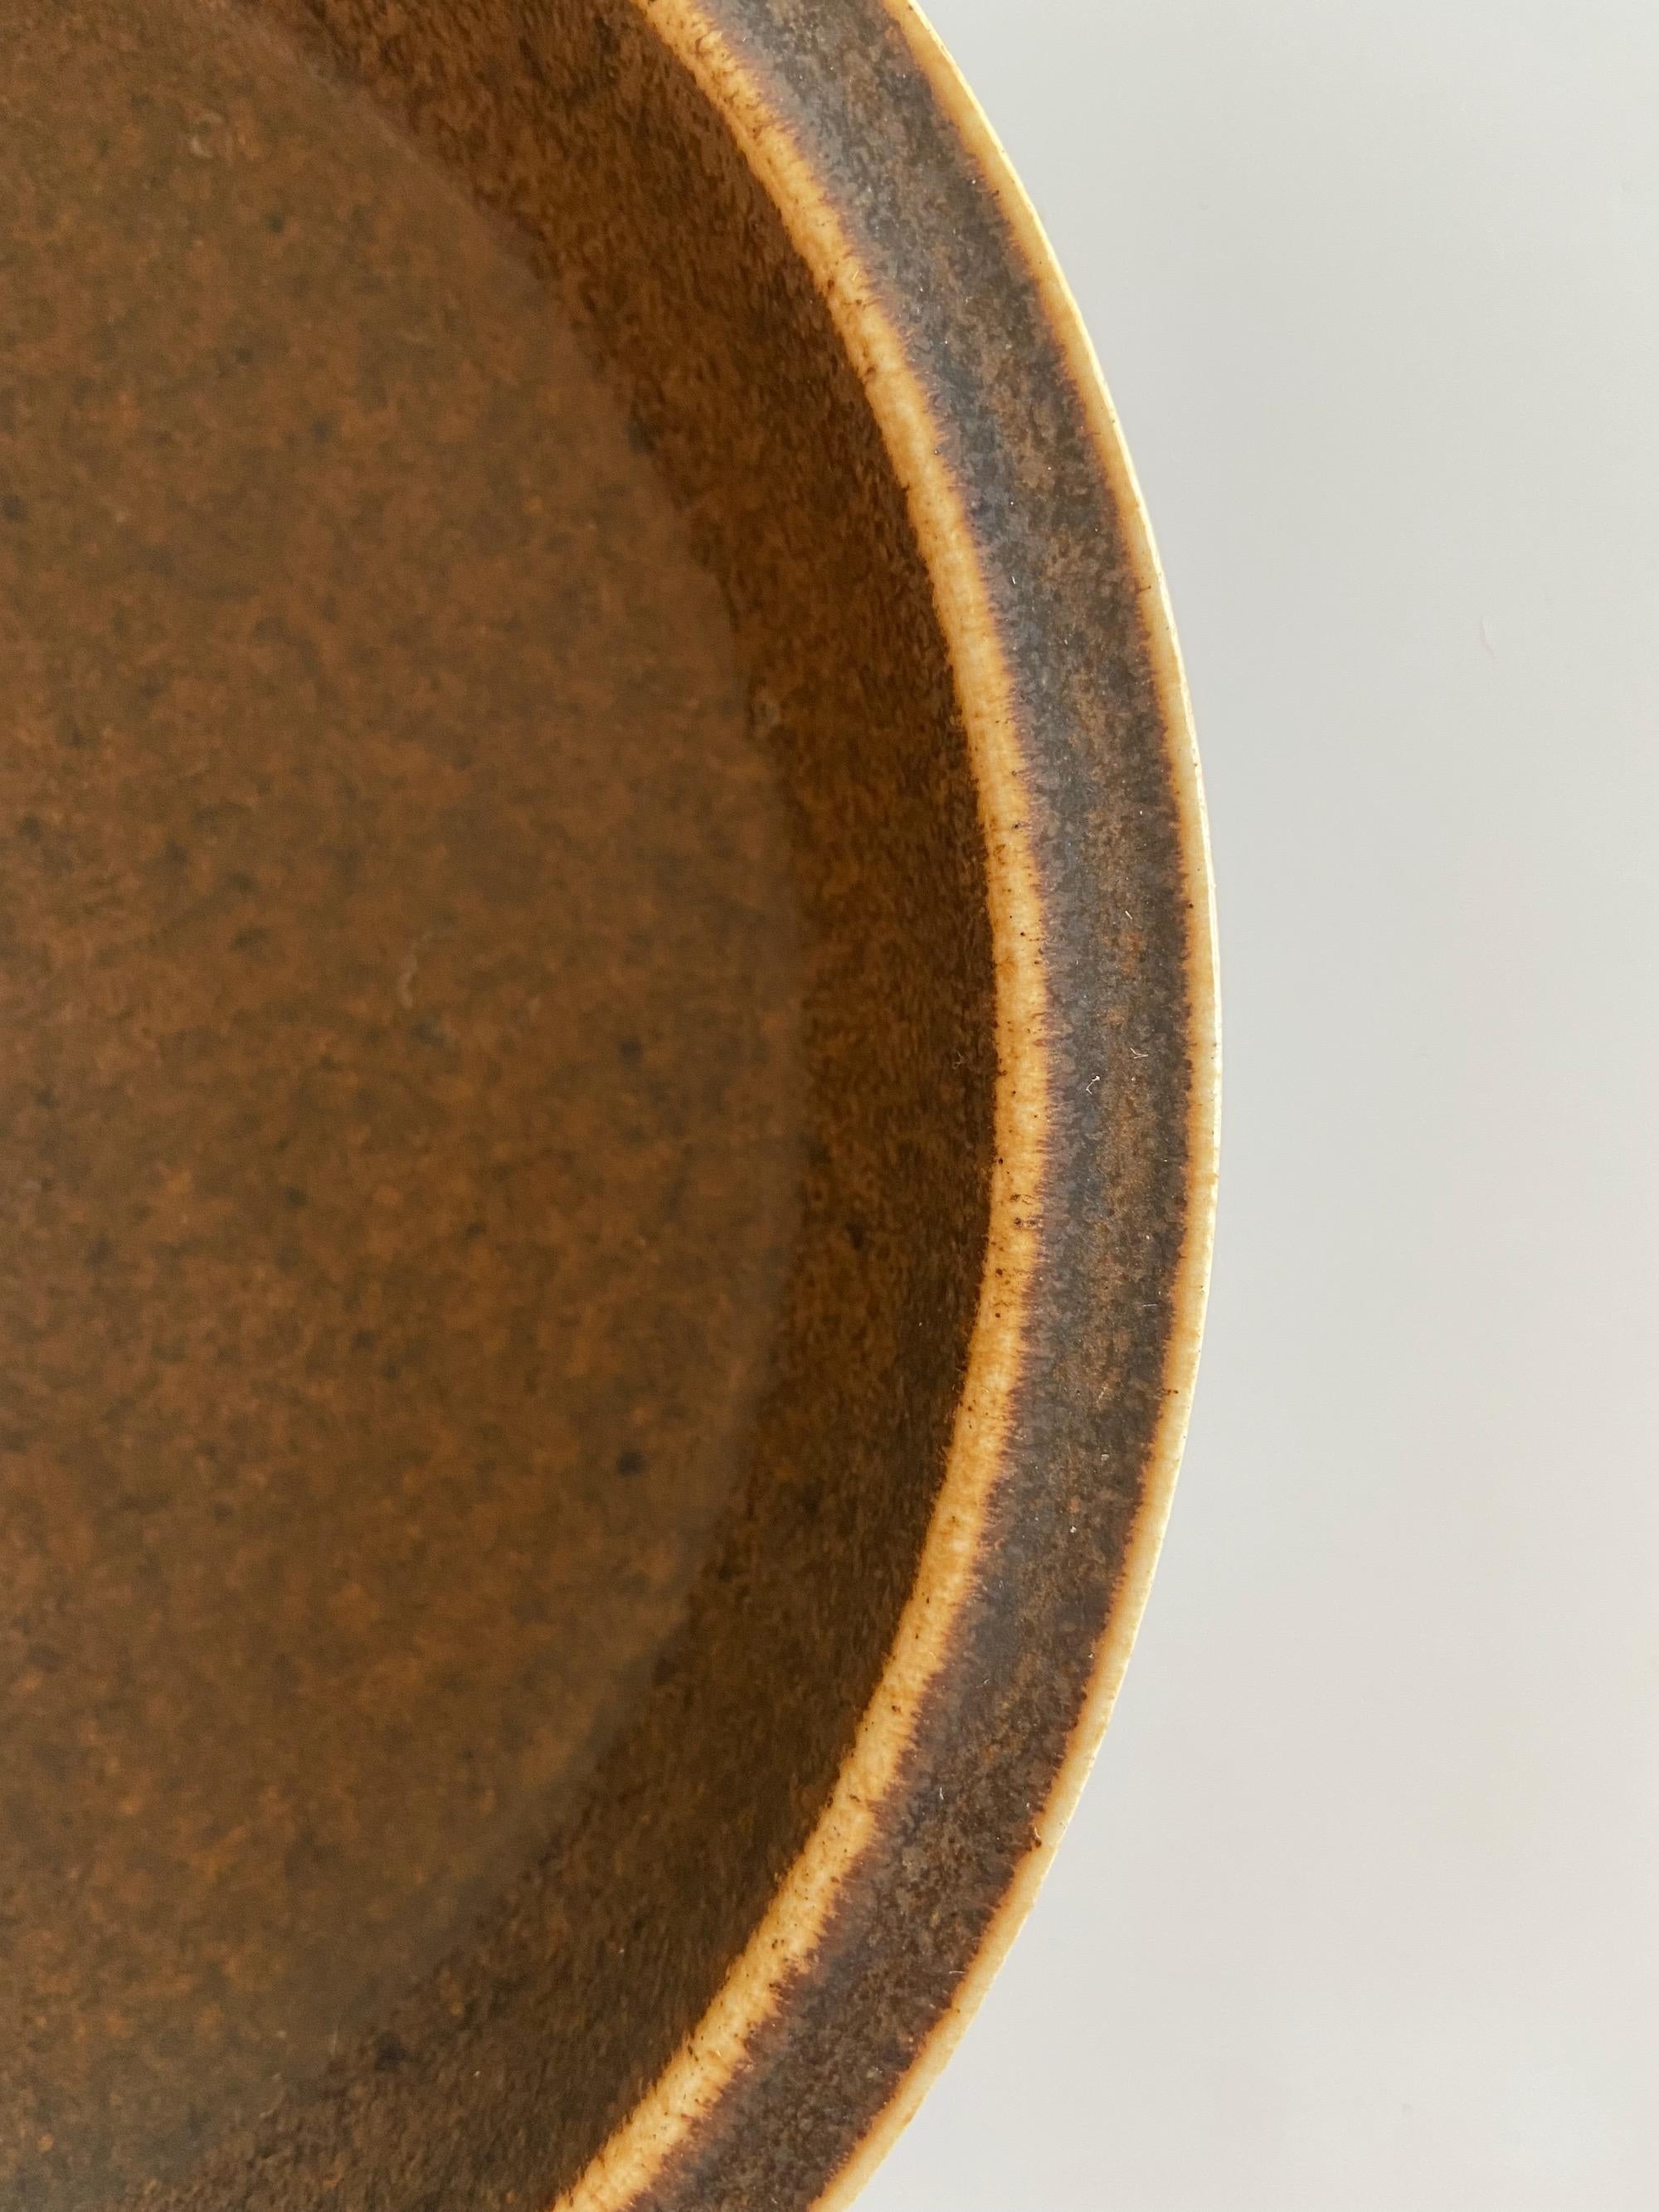 Danish Brown Glaze Model No. 66 Saxbo Ceramic Bowl